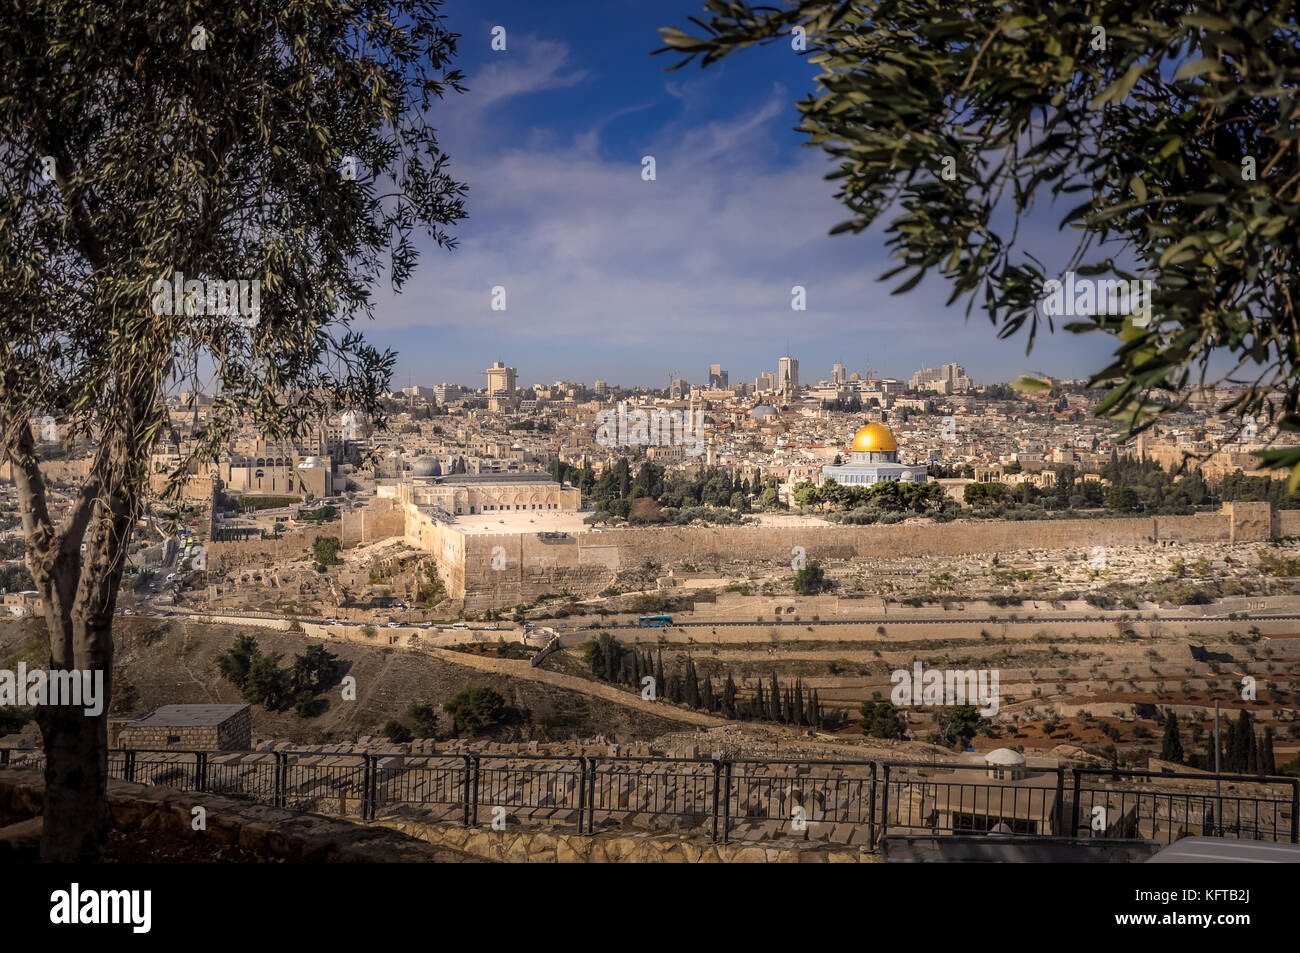 Vue panoramique sur la vieille ville de Jérusalem - Jérusalem, Israël Banque D'Images